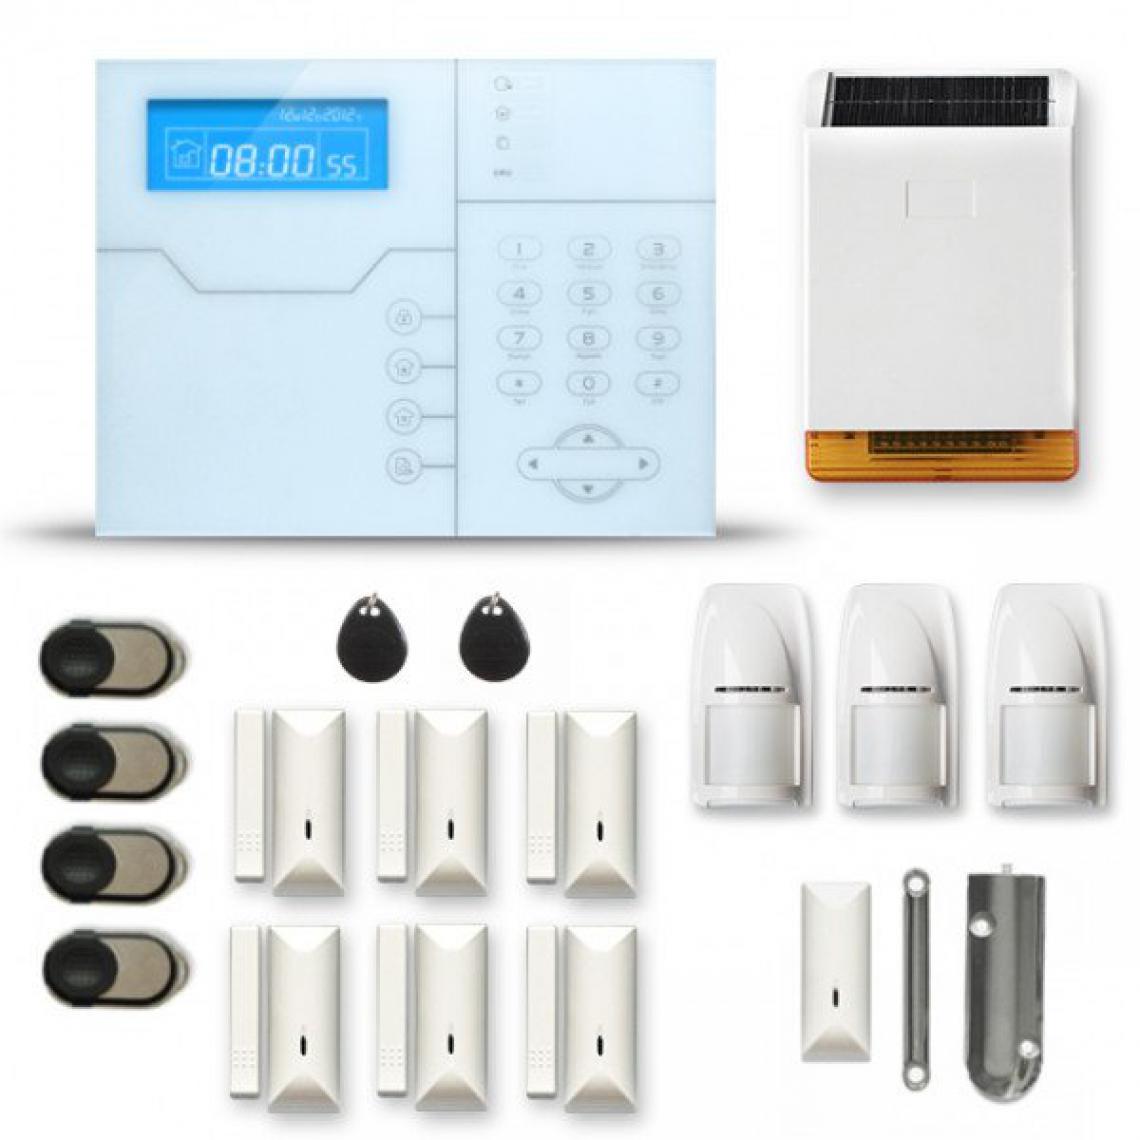 Tike Securite - Alarme maison sans fil SHB47 GSM/IP avec option GSM incluse - Alarme connectée